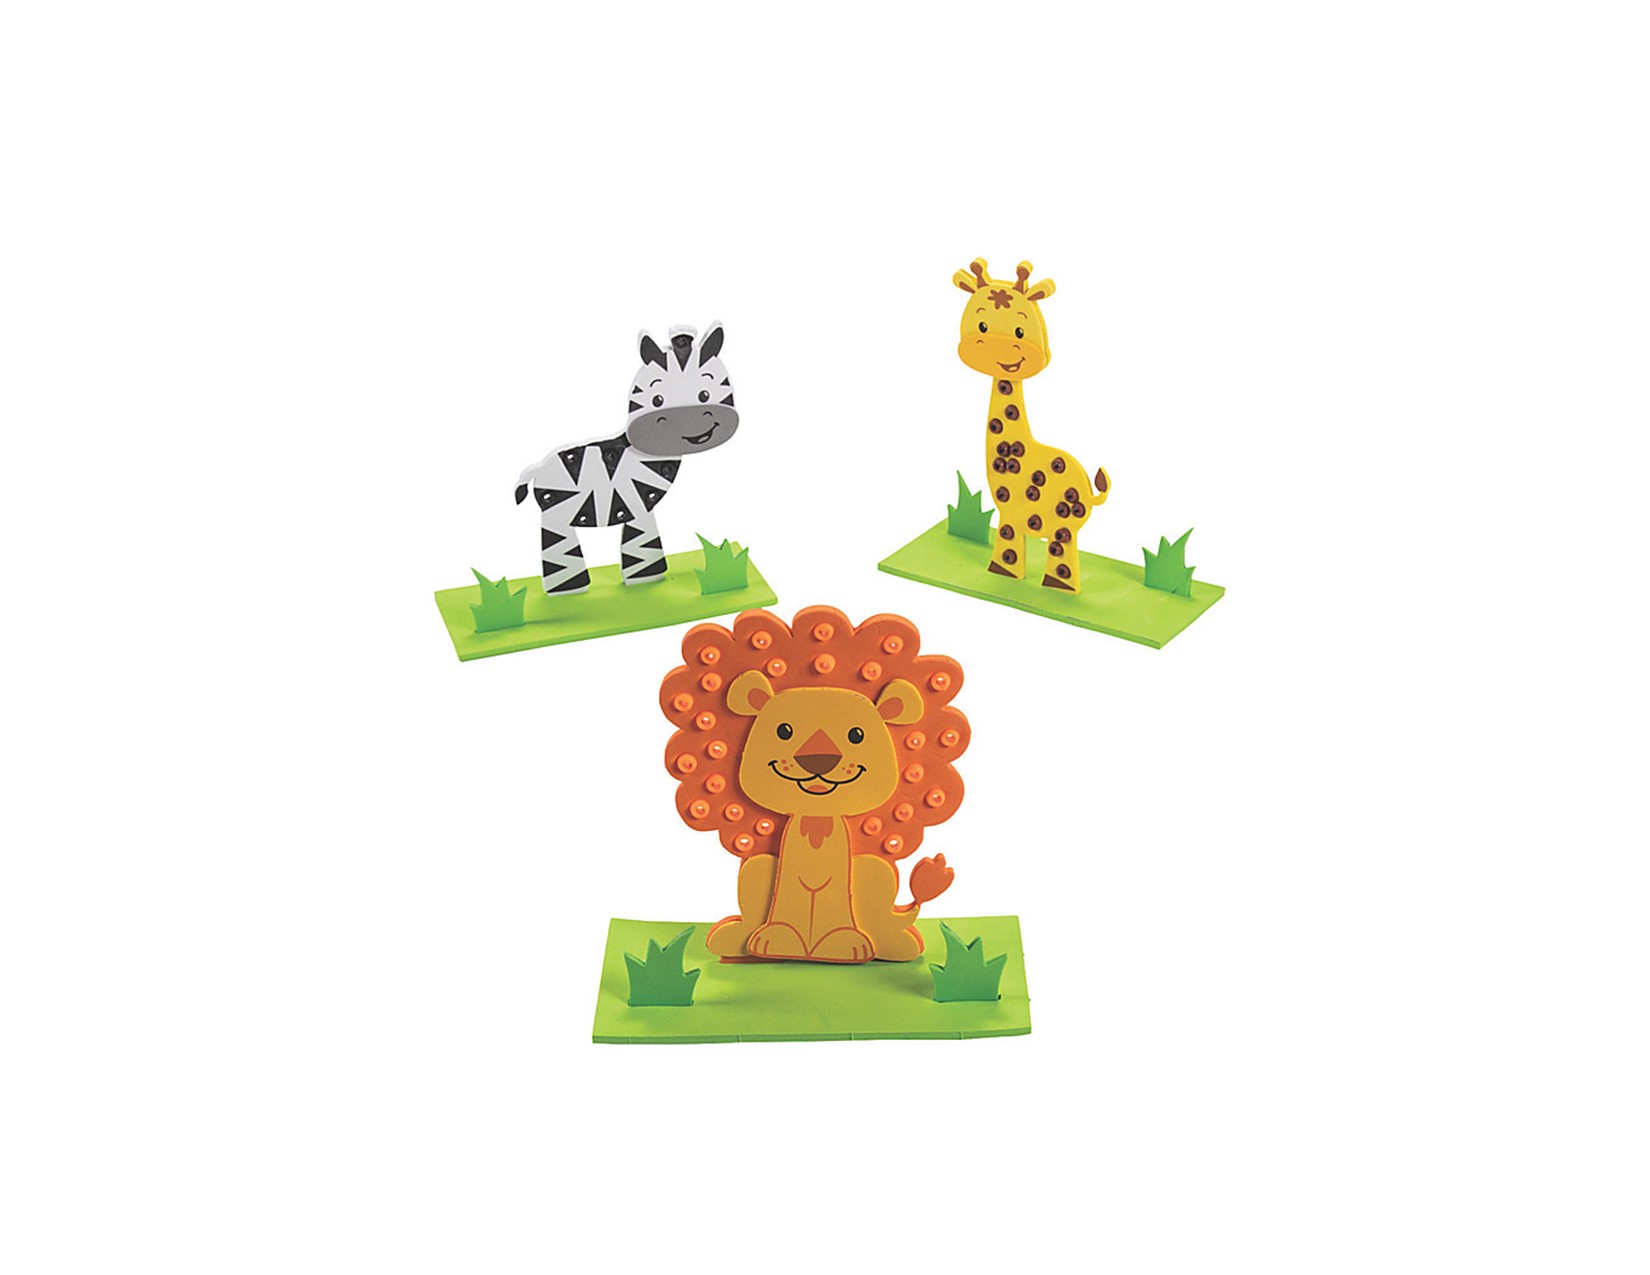 picture of lion, zebra and giraffe foam crafts